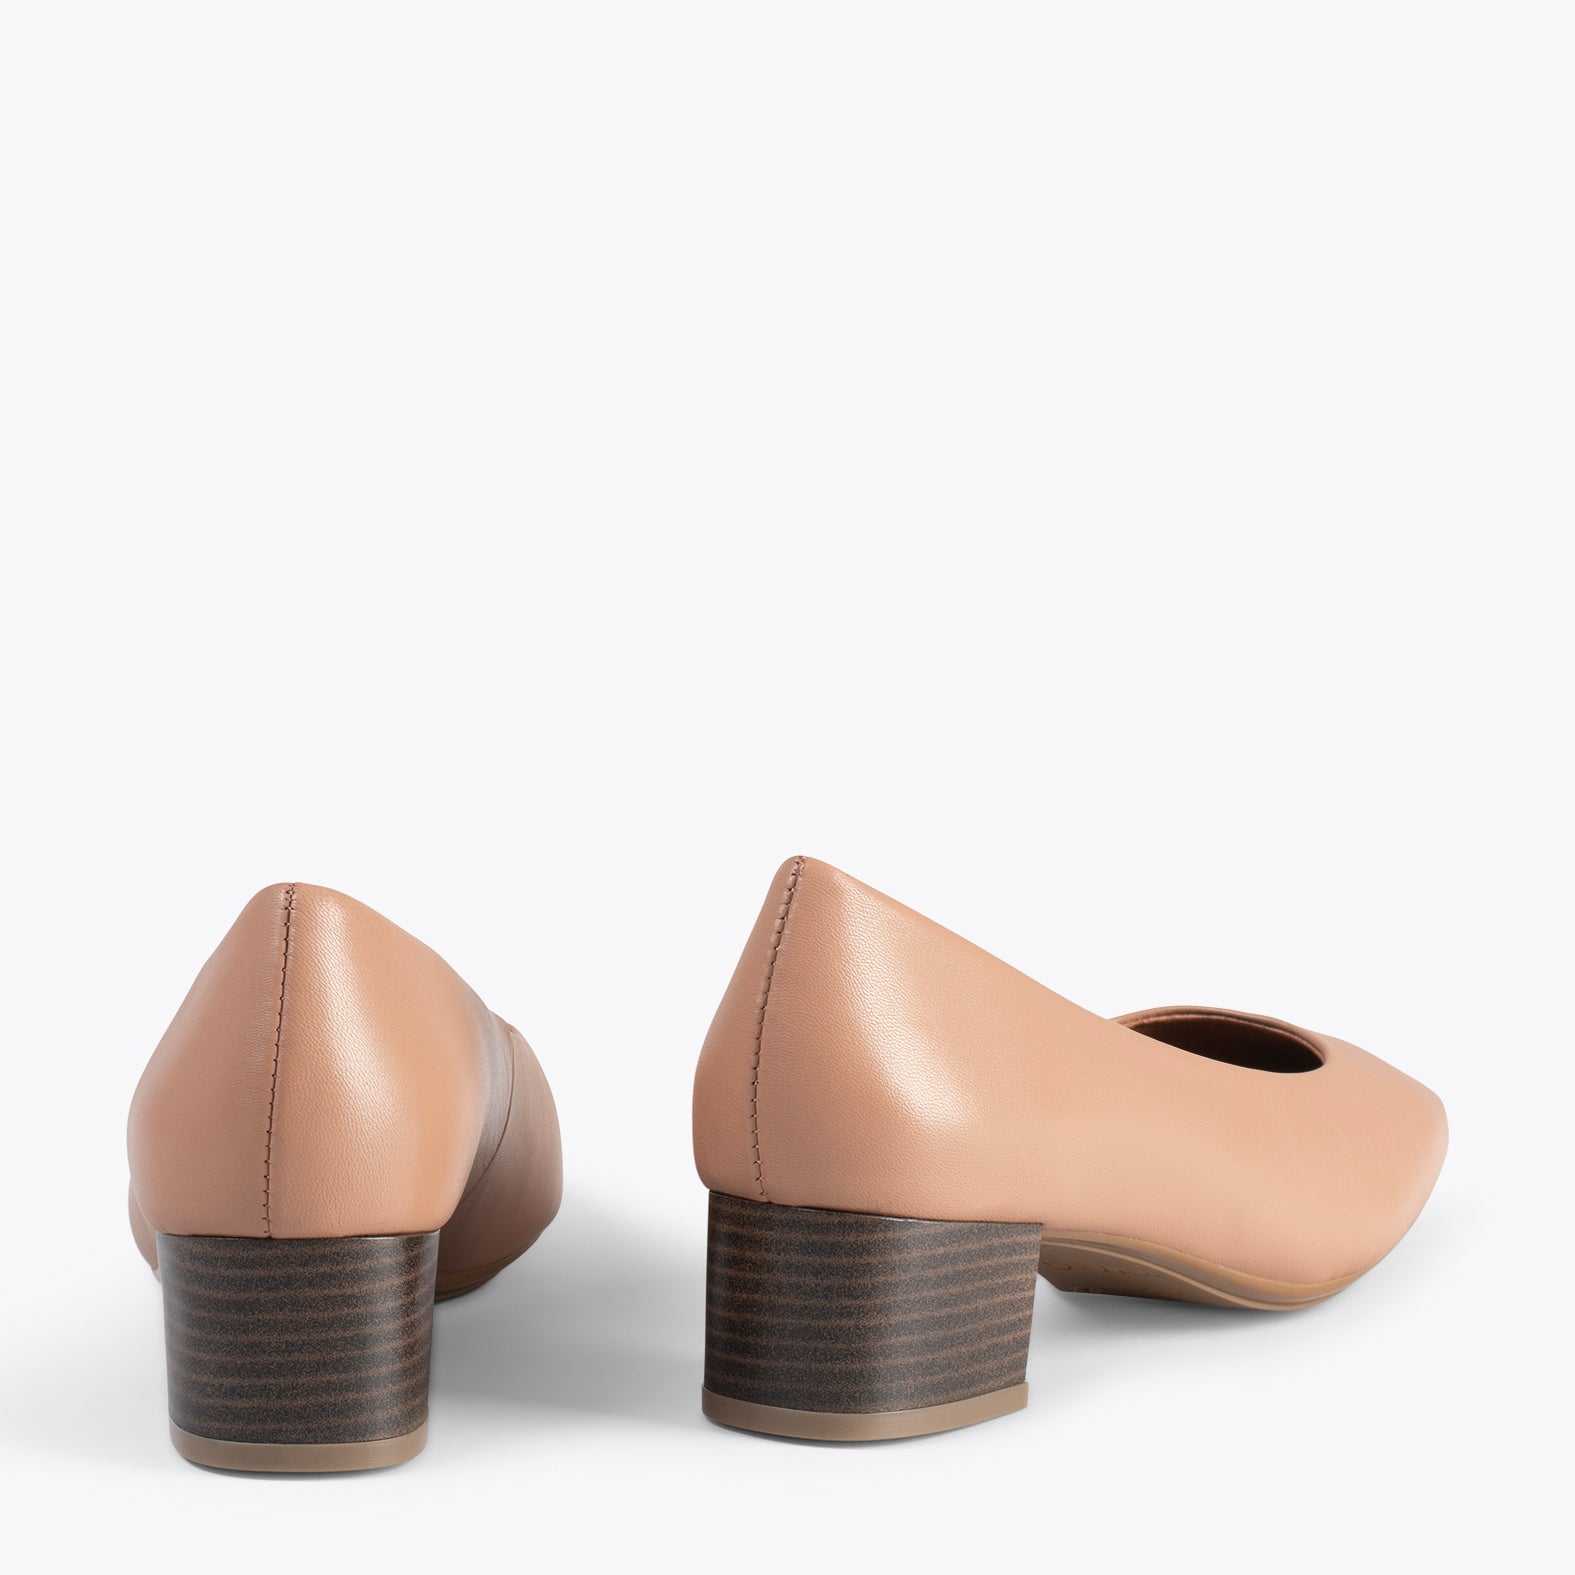 URBAN LADY - Zapatos de tacón bajo de napa NUDE